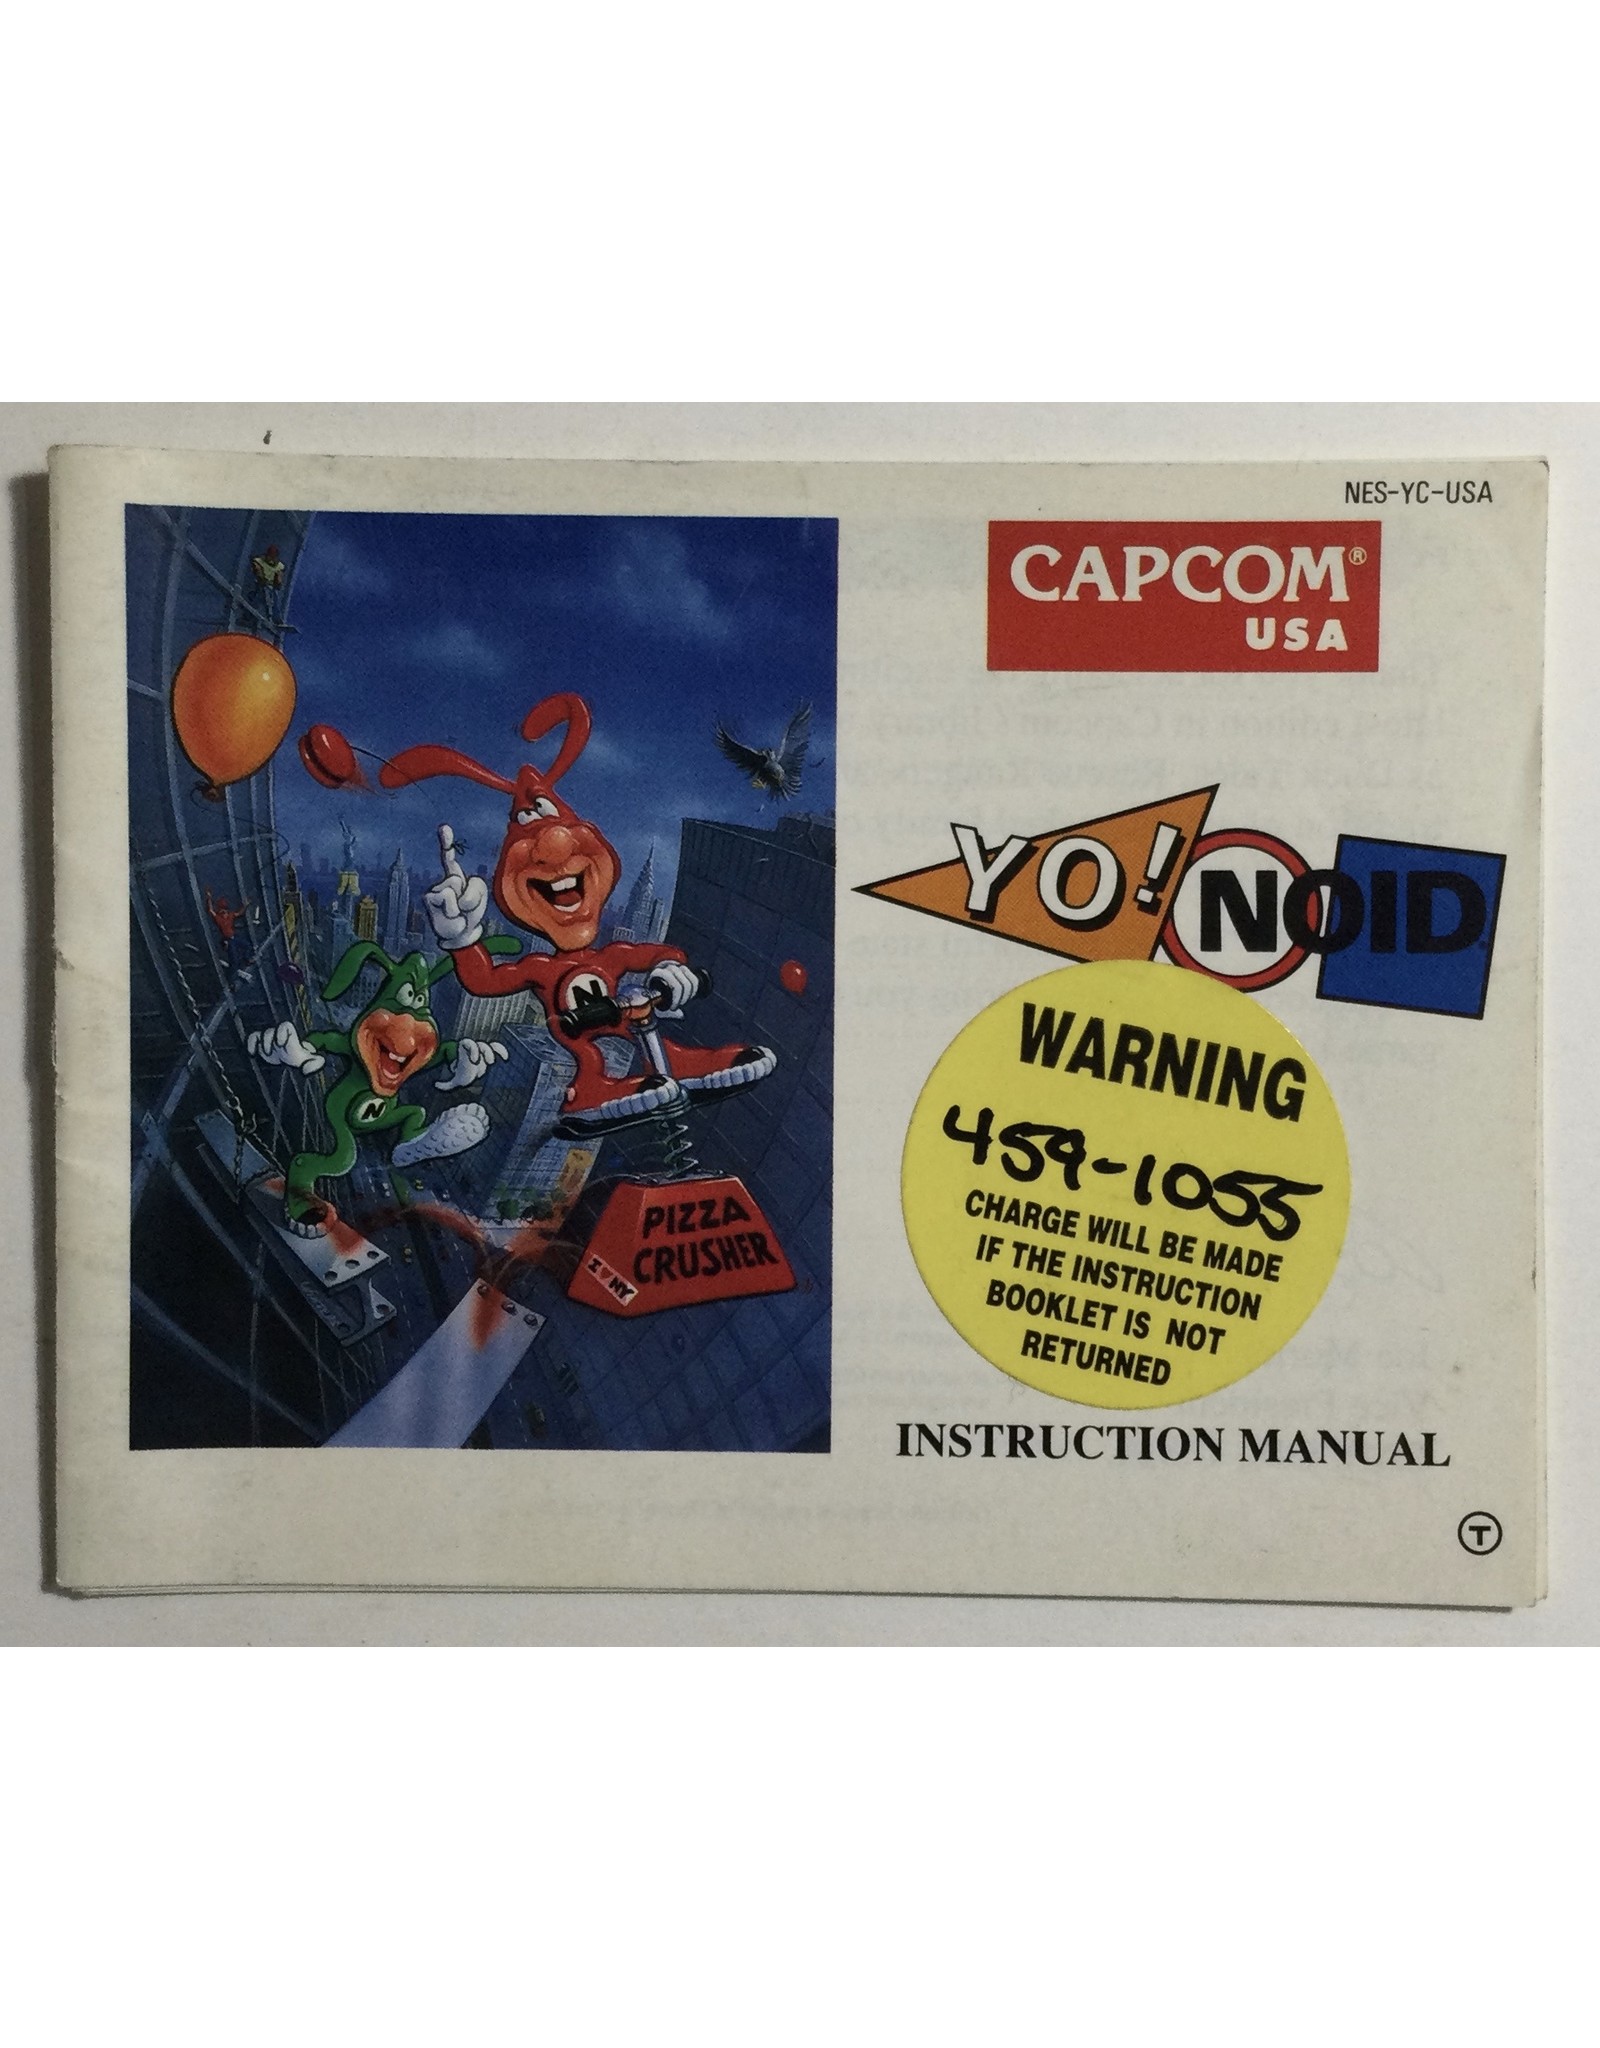 CAPCOM YO! NOID for Nintendo Entertainment System (NES) - CIB